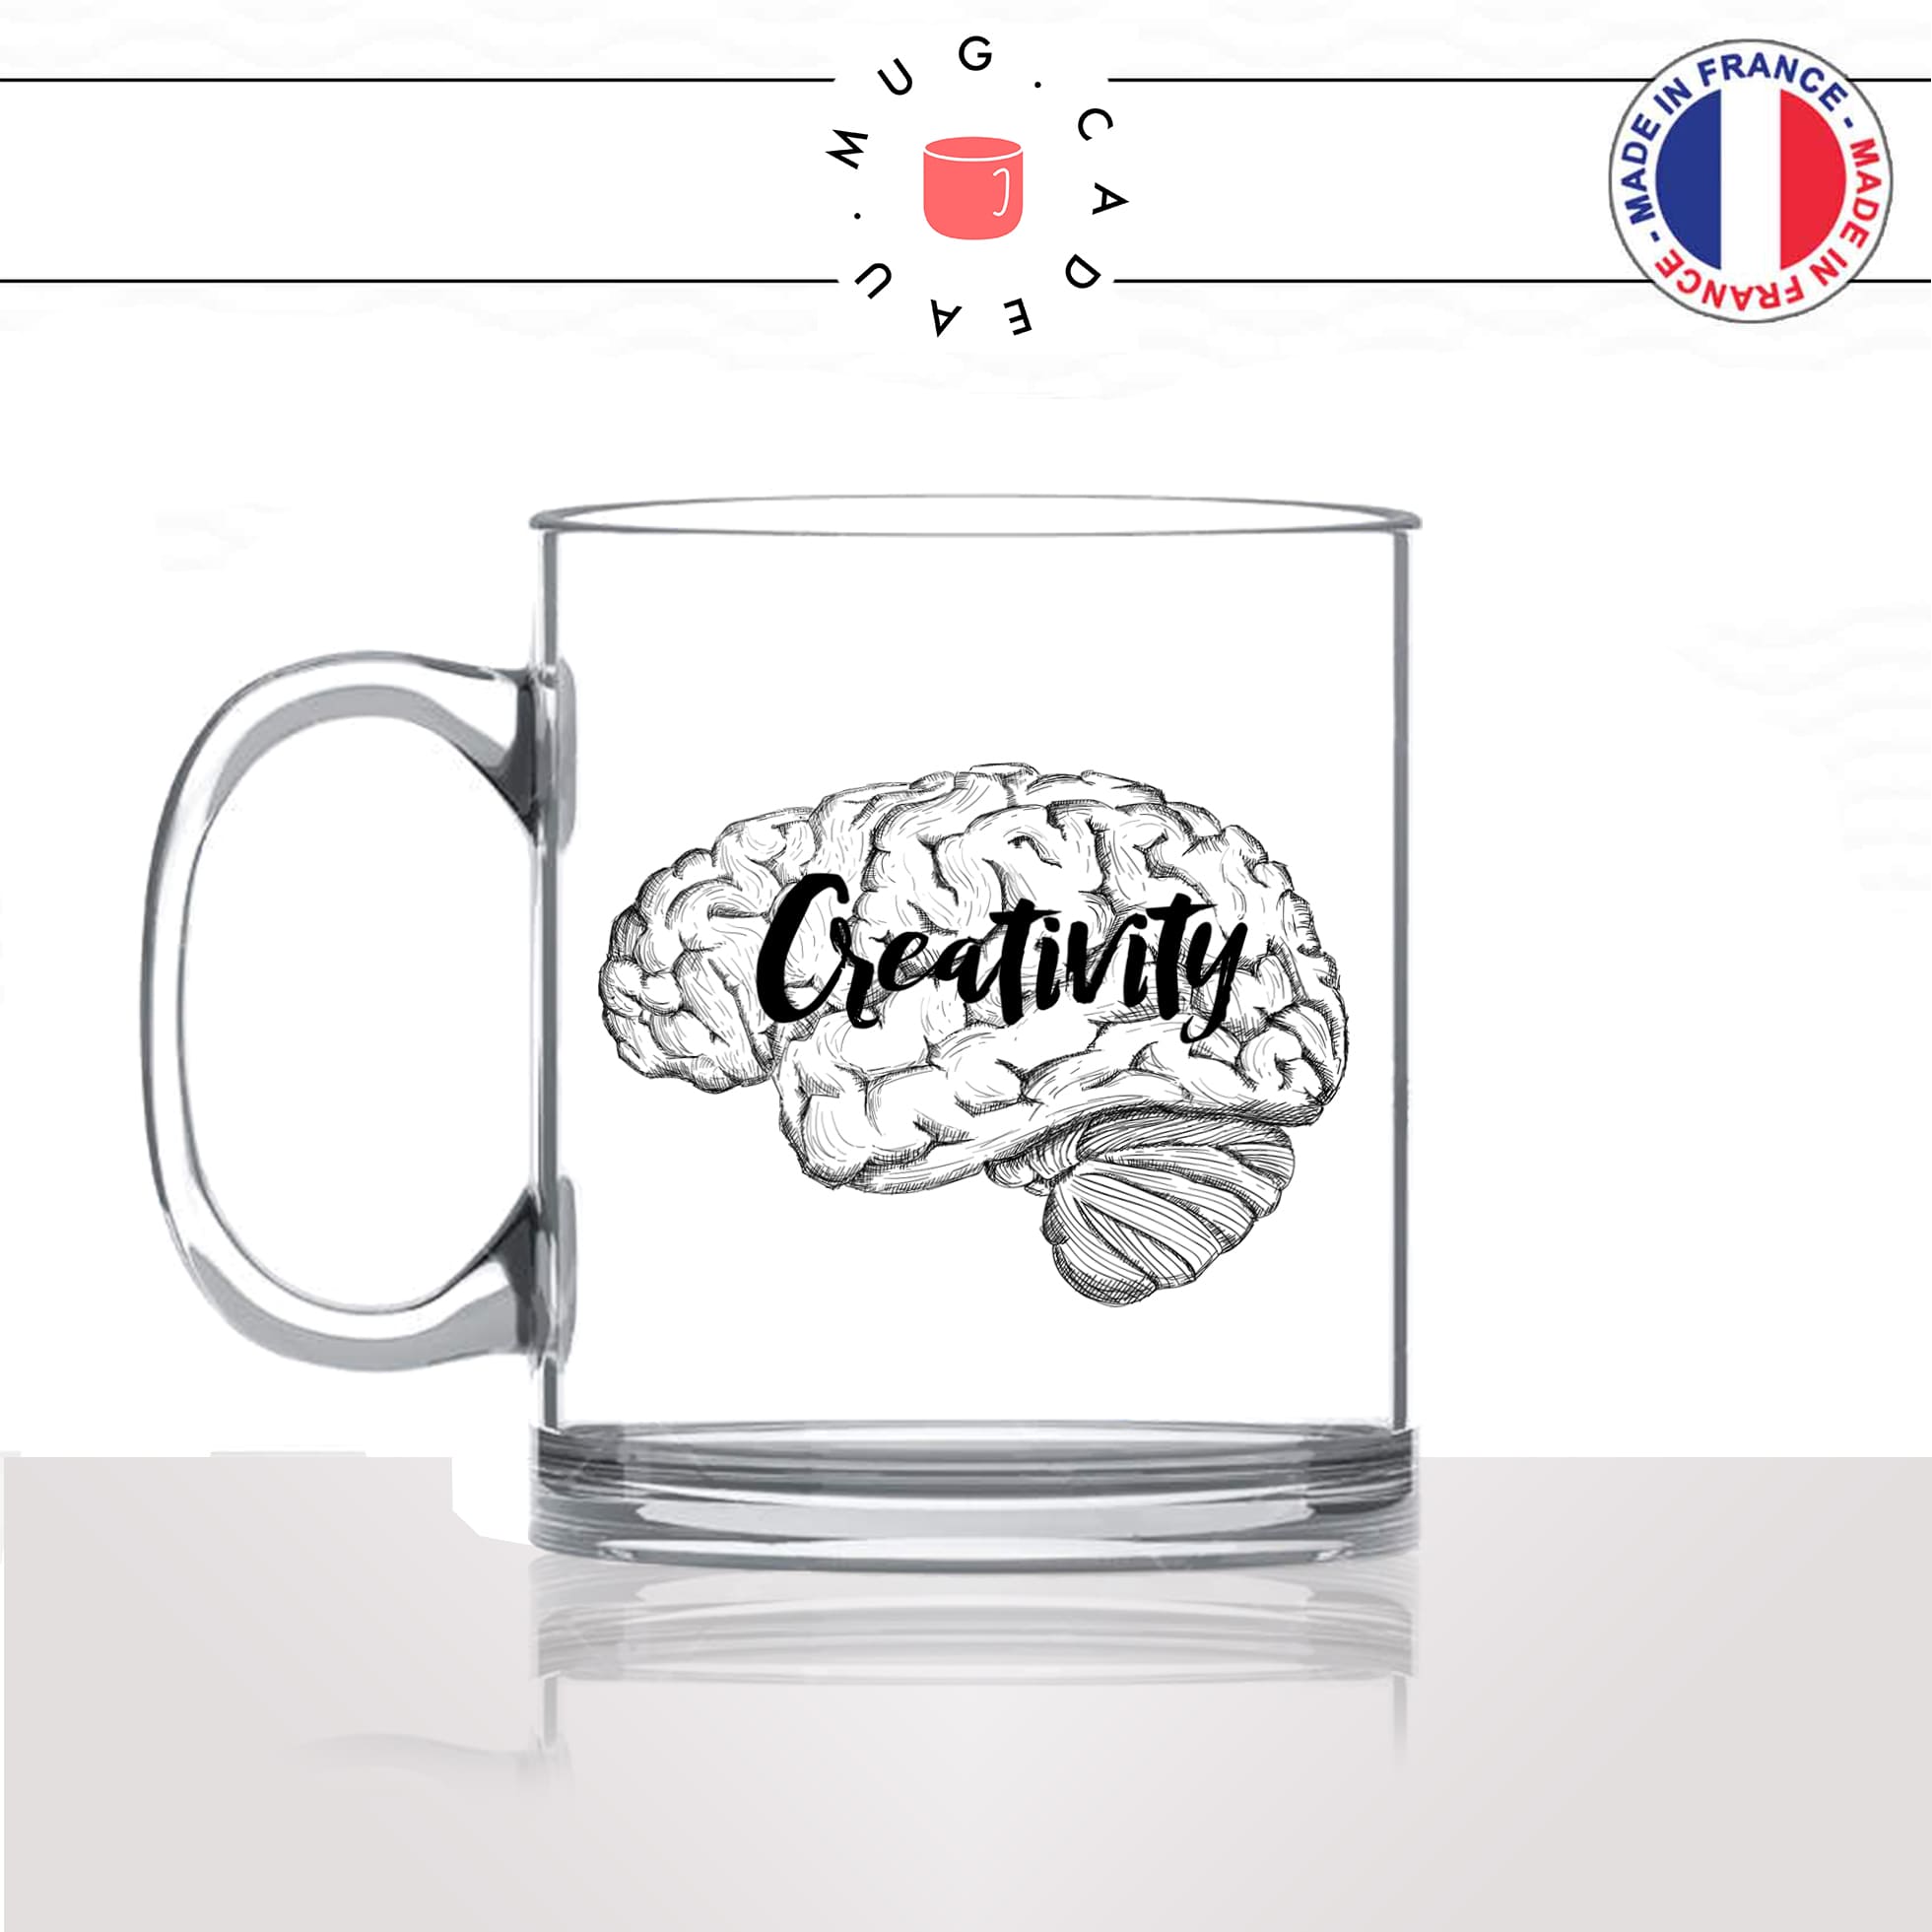 mug-tasse-en-verre-transparent-glass-creativity-creativité-travail-boulot-immagination-idée-cerveau-femme-homme-idée-cadeau-fun-cool-café-thé